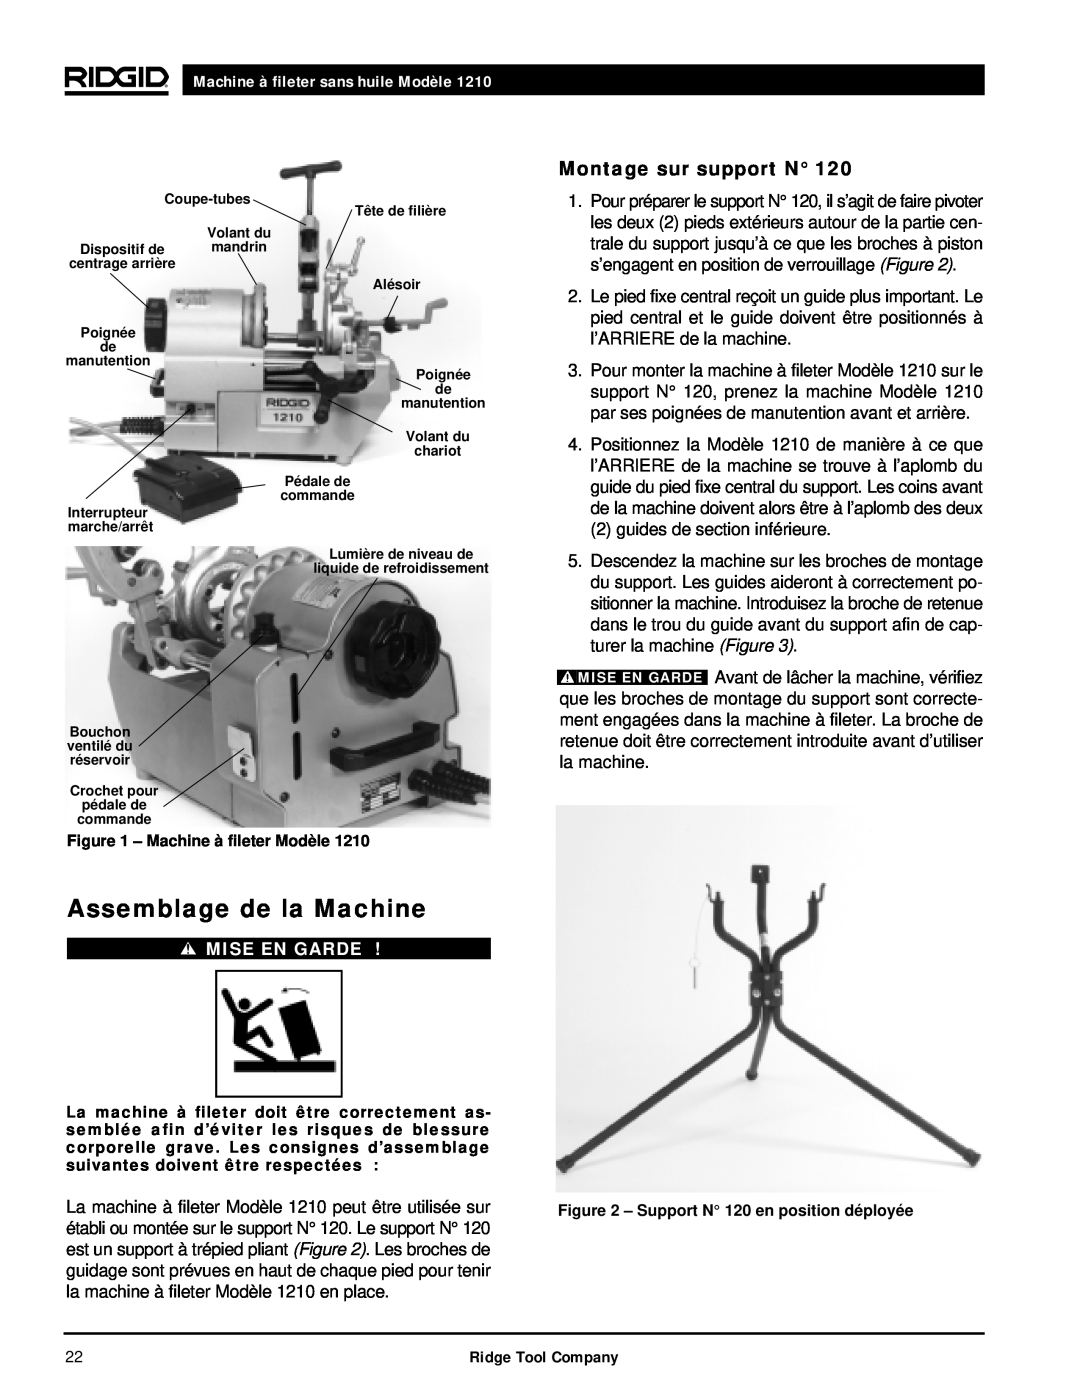 RIDGID 1210 manual Assemblage de la Machine, Montage sur support N, Machine à fileter sans huile Modèle, Mise En Garde 